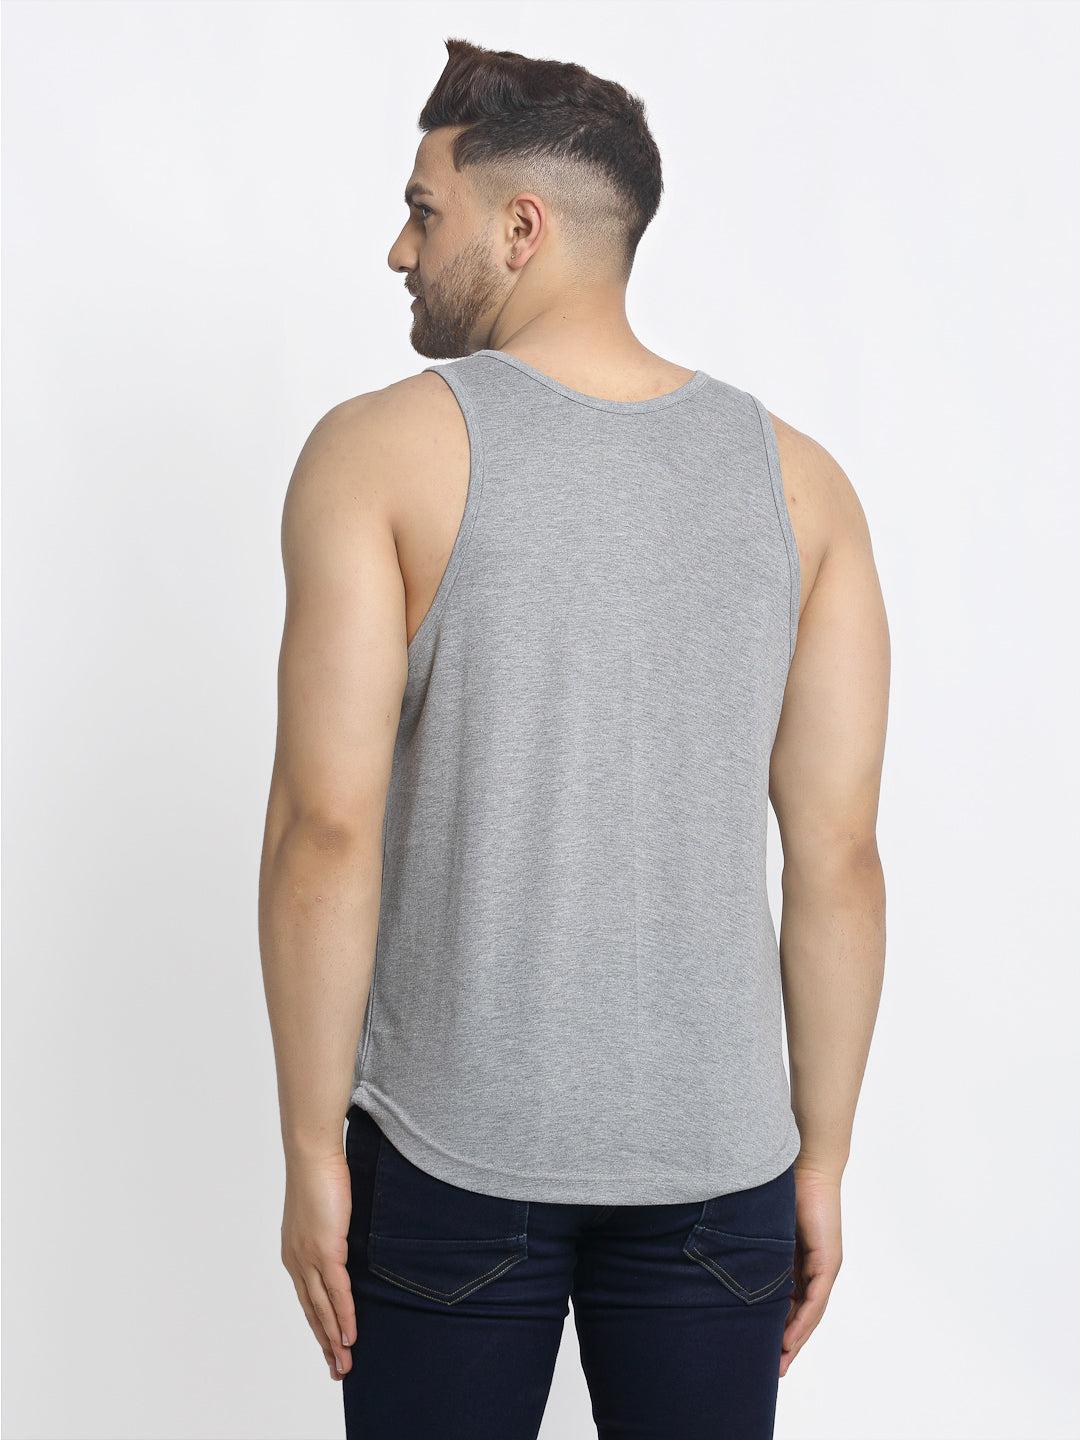 Men's Pack of 2 Grey & Navy Printed Gym Vest - Friskers